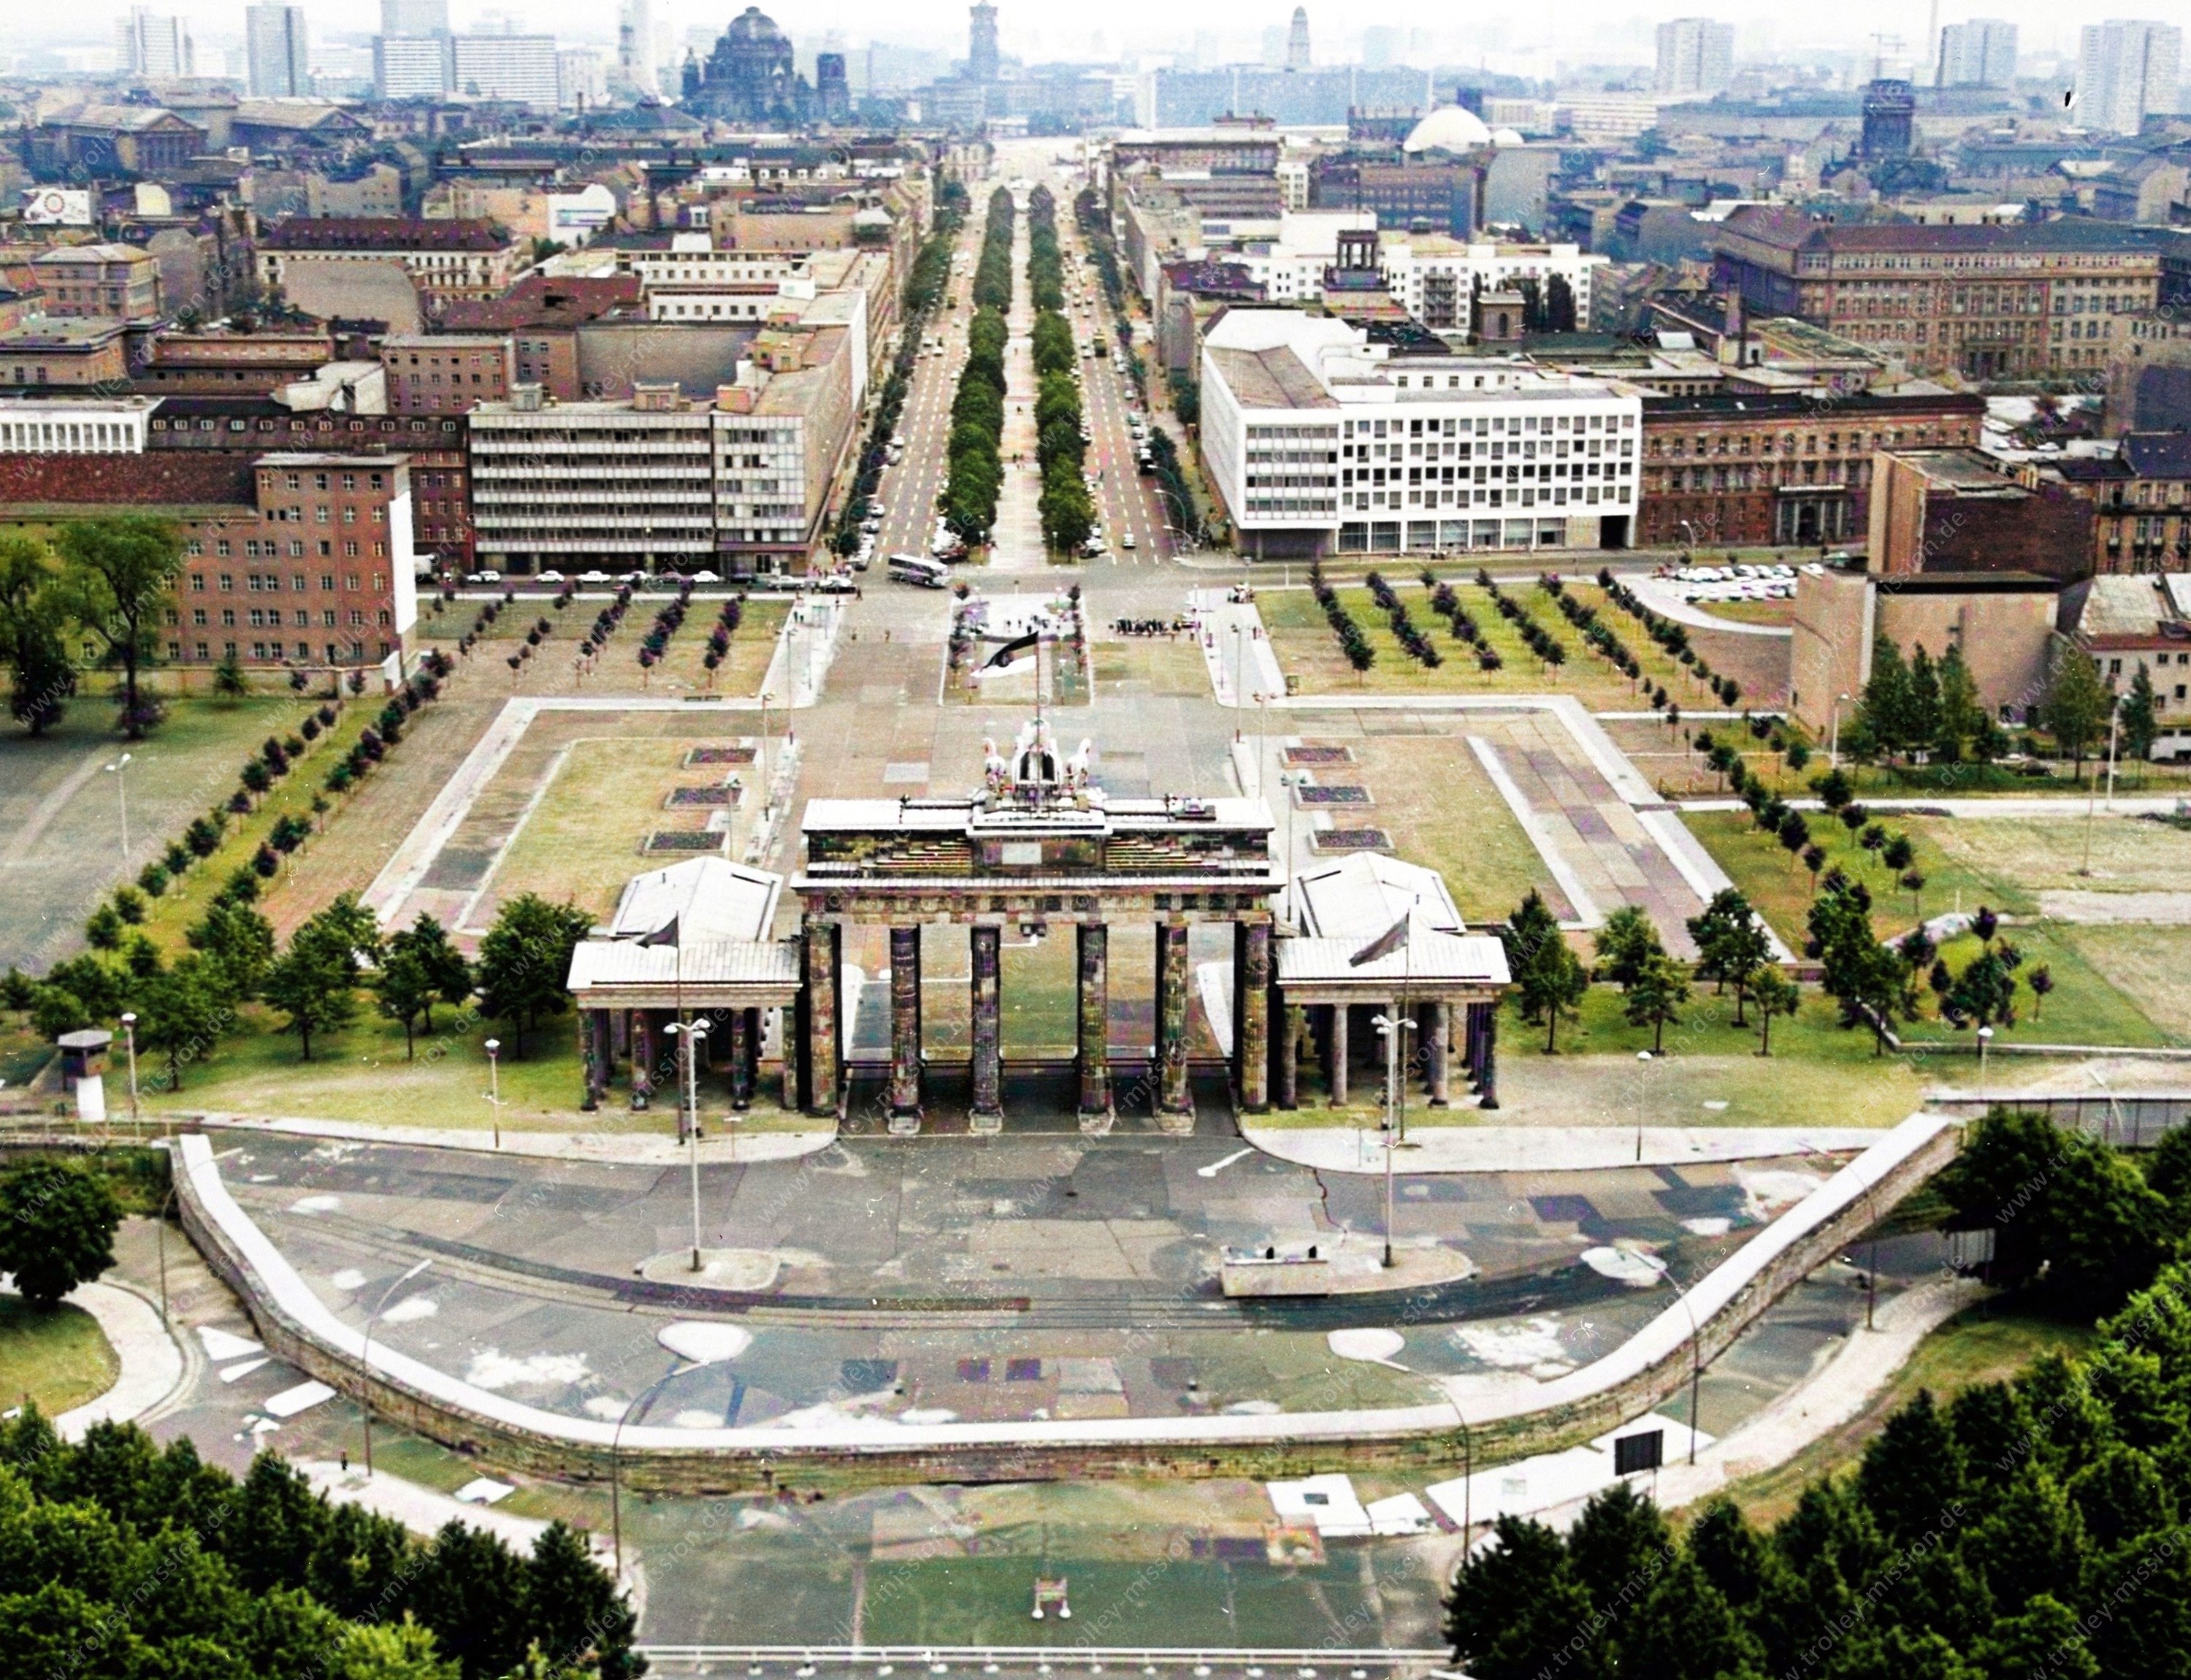 Das Luftbild zeigt das Brandenburger Tor sowie die davor verlaufende Berliner Mauer in den späten 1960’er oder frühen 1970’er Jahren.